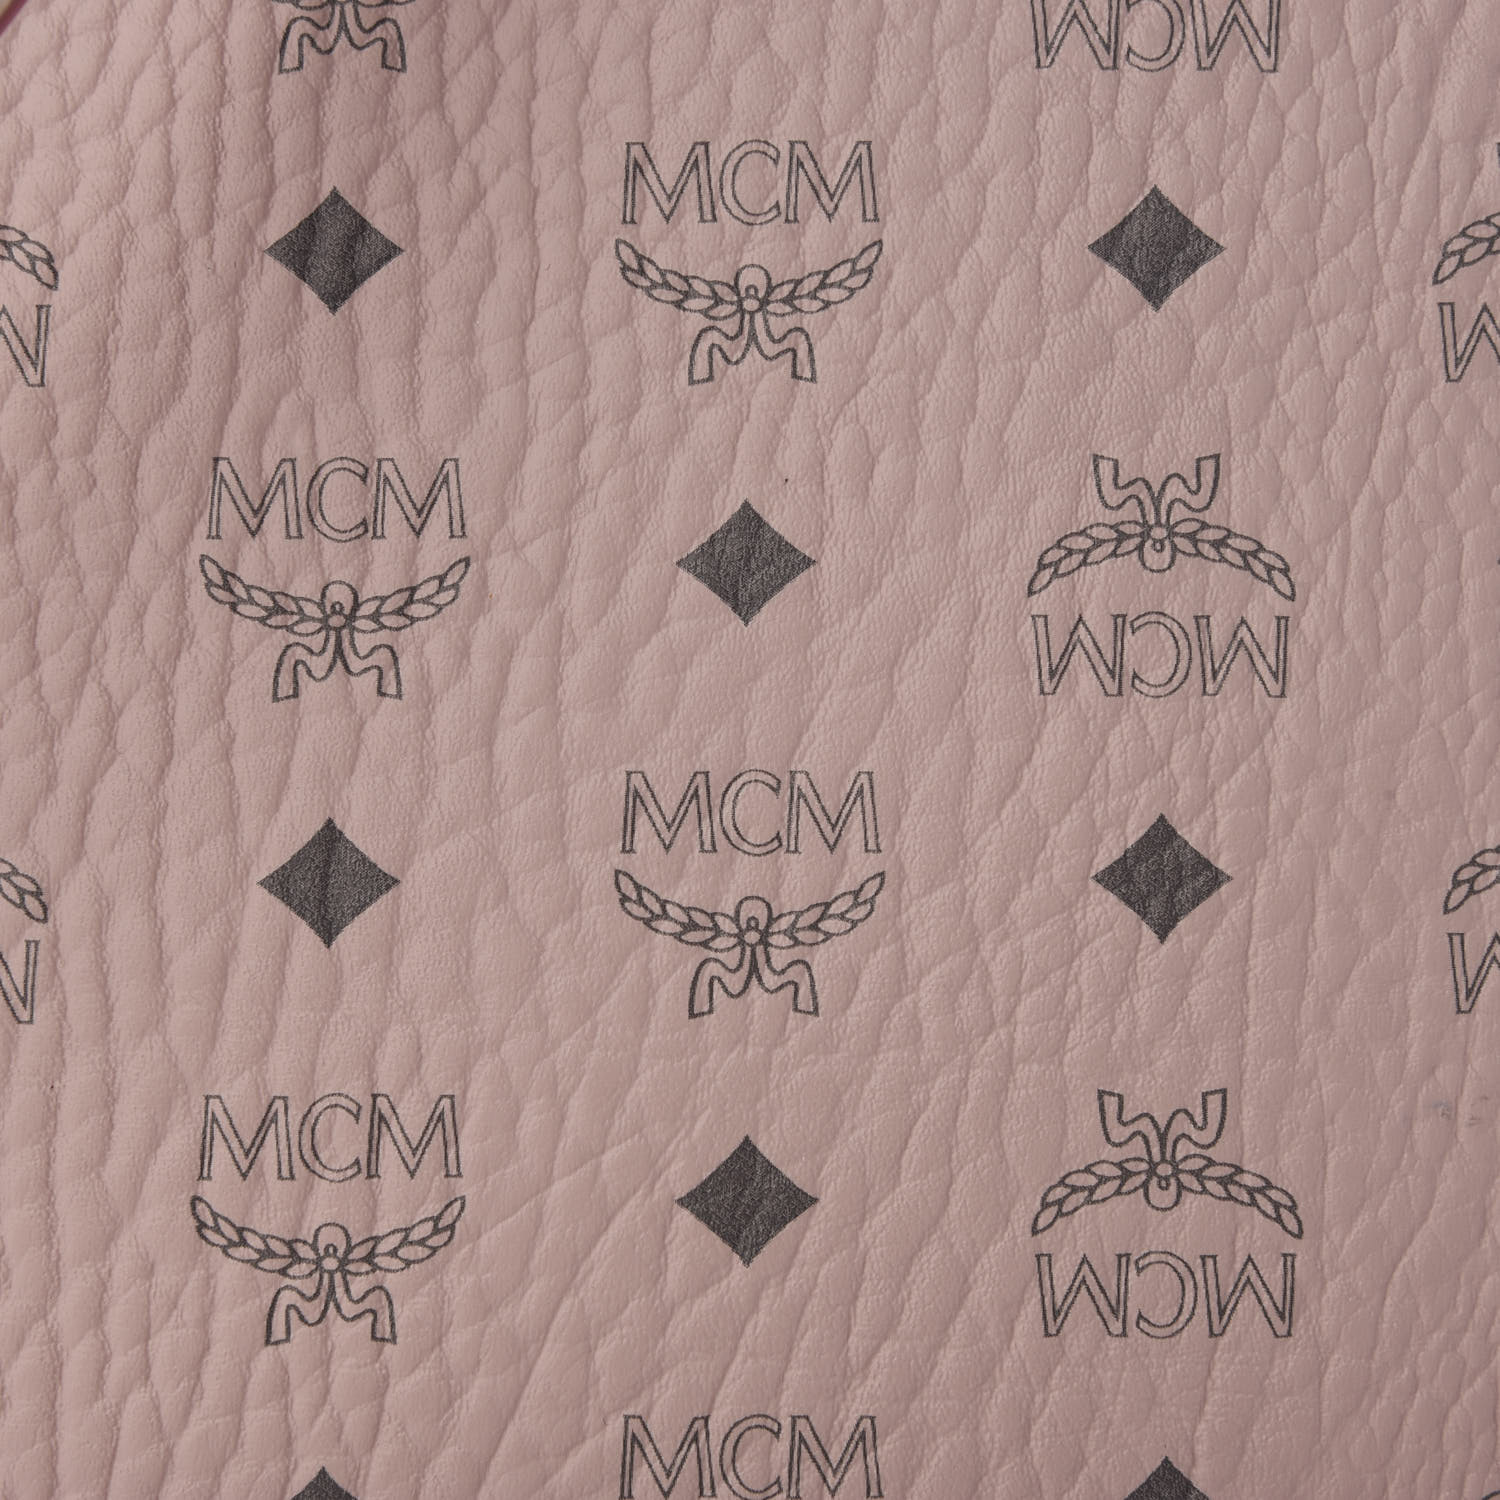 Mcm Visetos Liz Shopper Tote Pouch Powder Pink Fashionphile